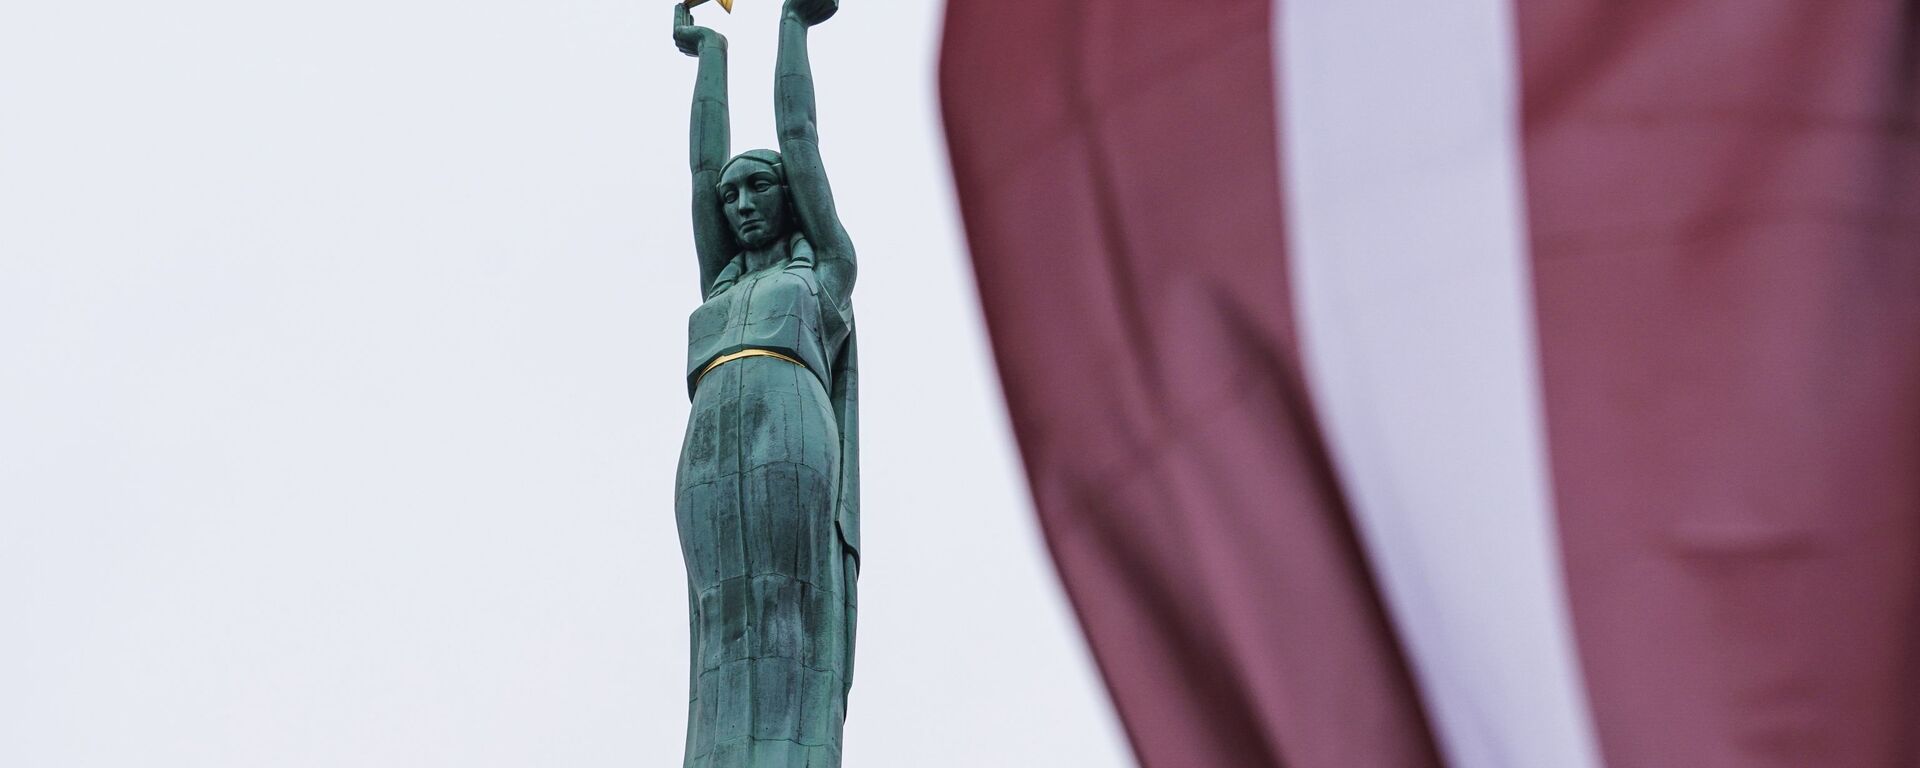 Празднование Дня независимости Латвии - Sputnik Латвия, 1920, 29.08.2021